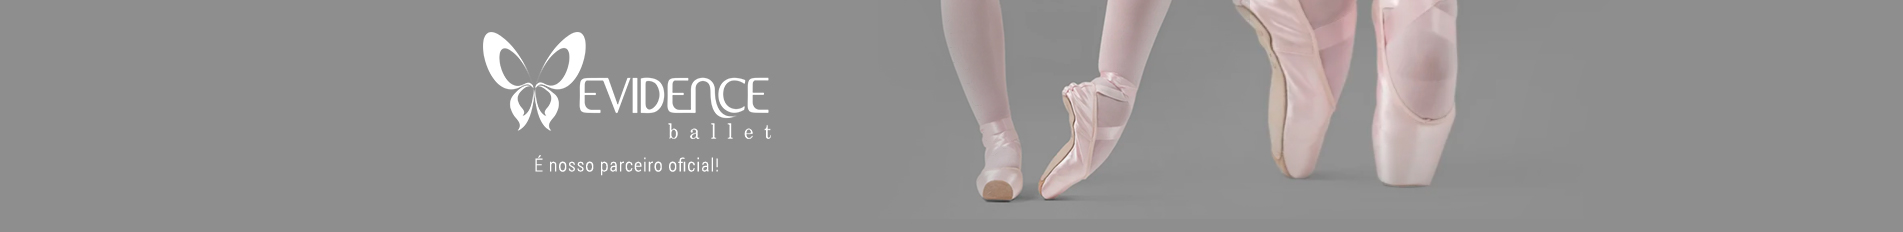 Arquivos pés de bailarina - Evidence Ballet - Loja Virtual